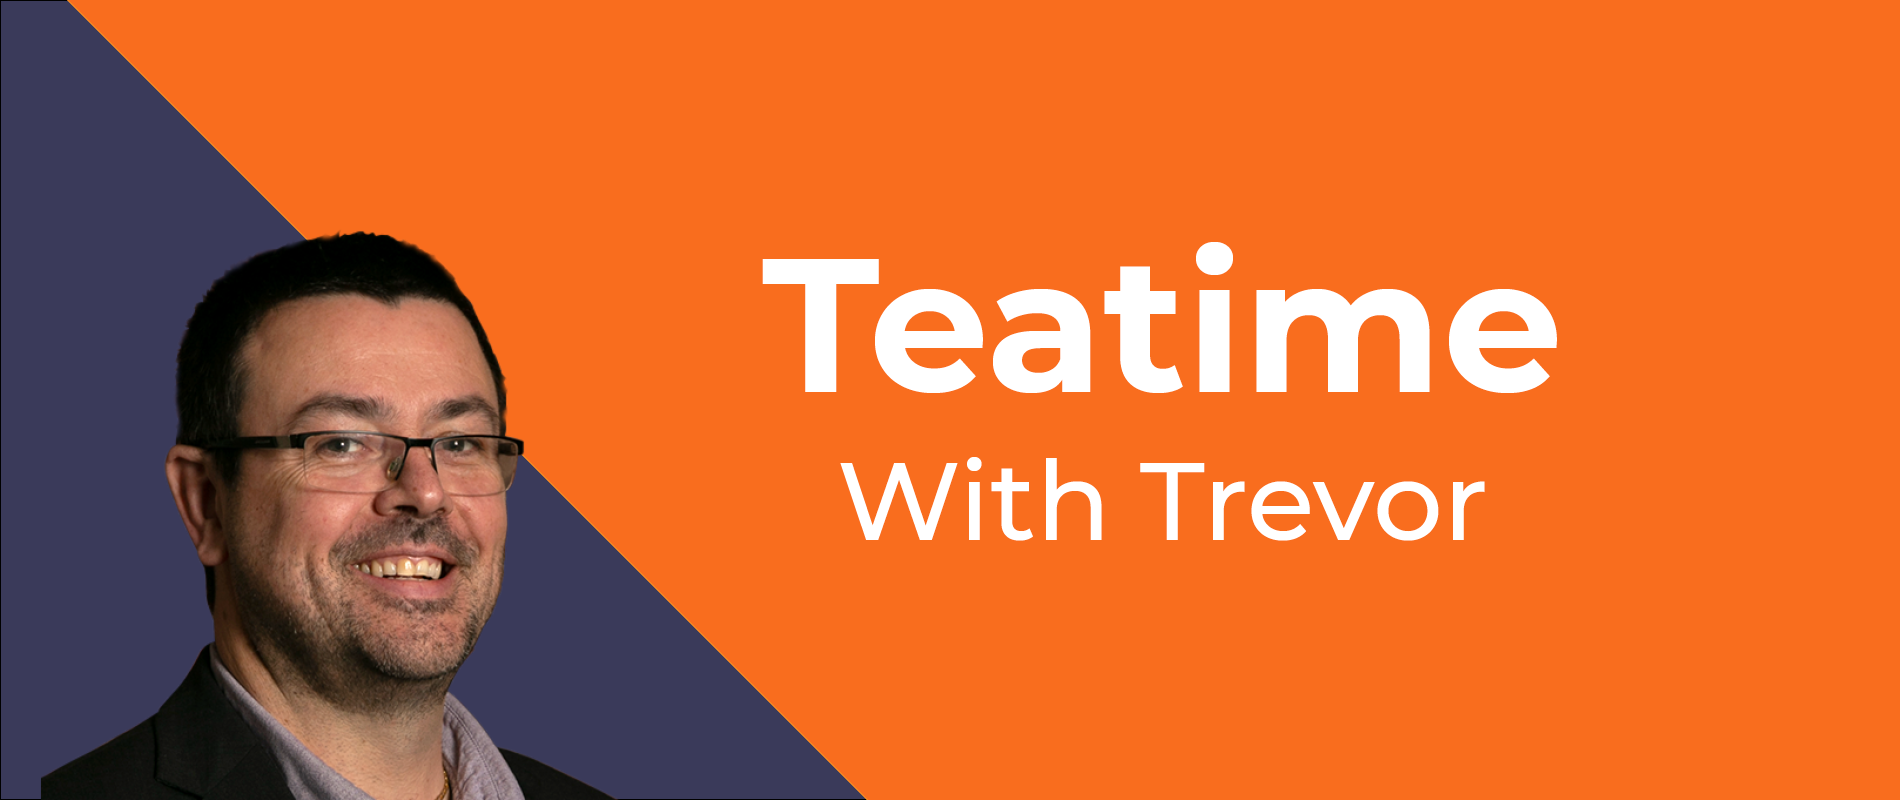 February: Tea Break With Trevor